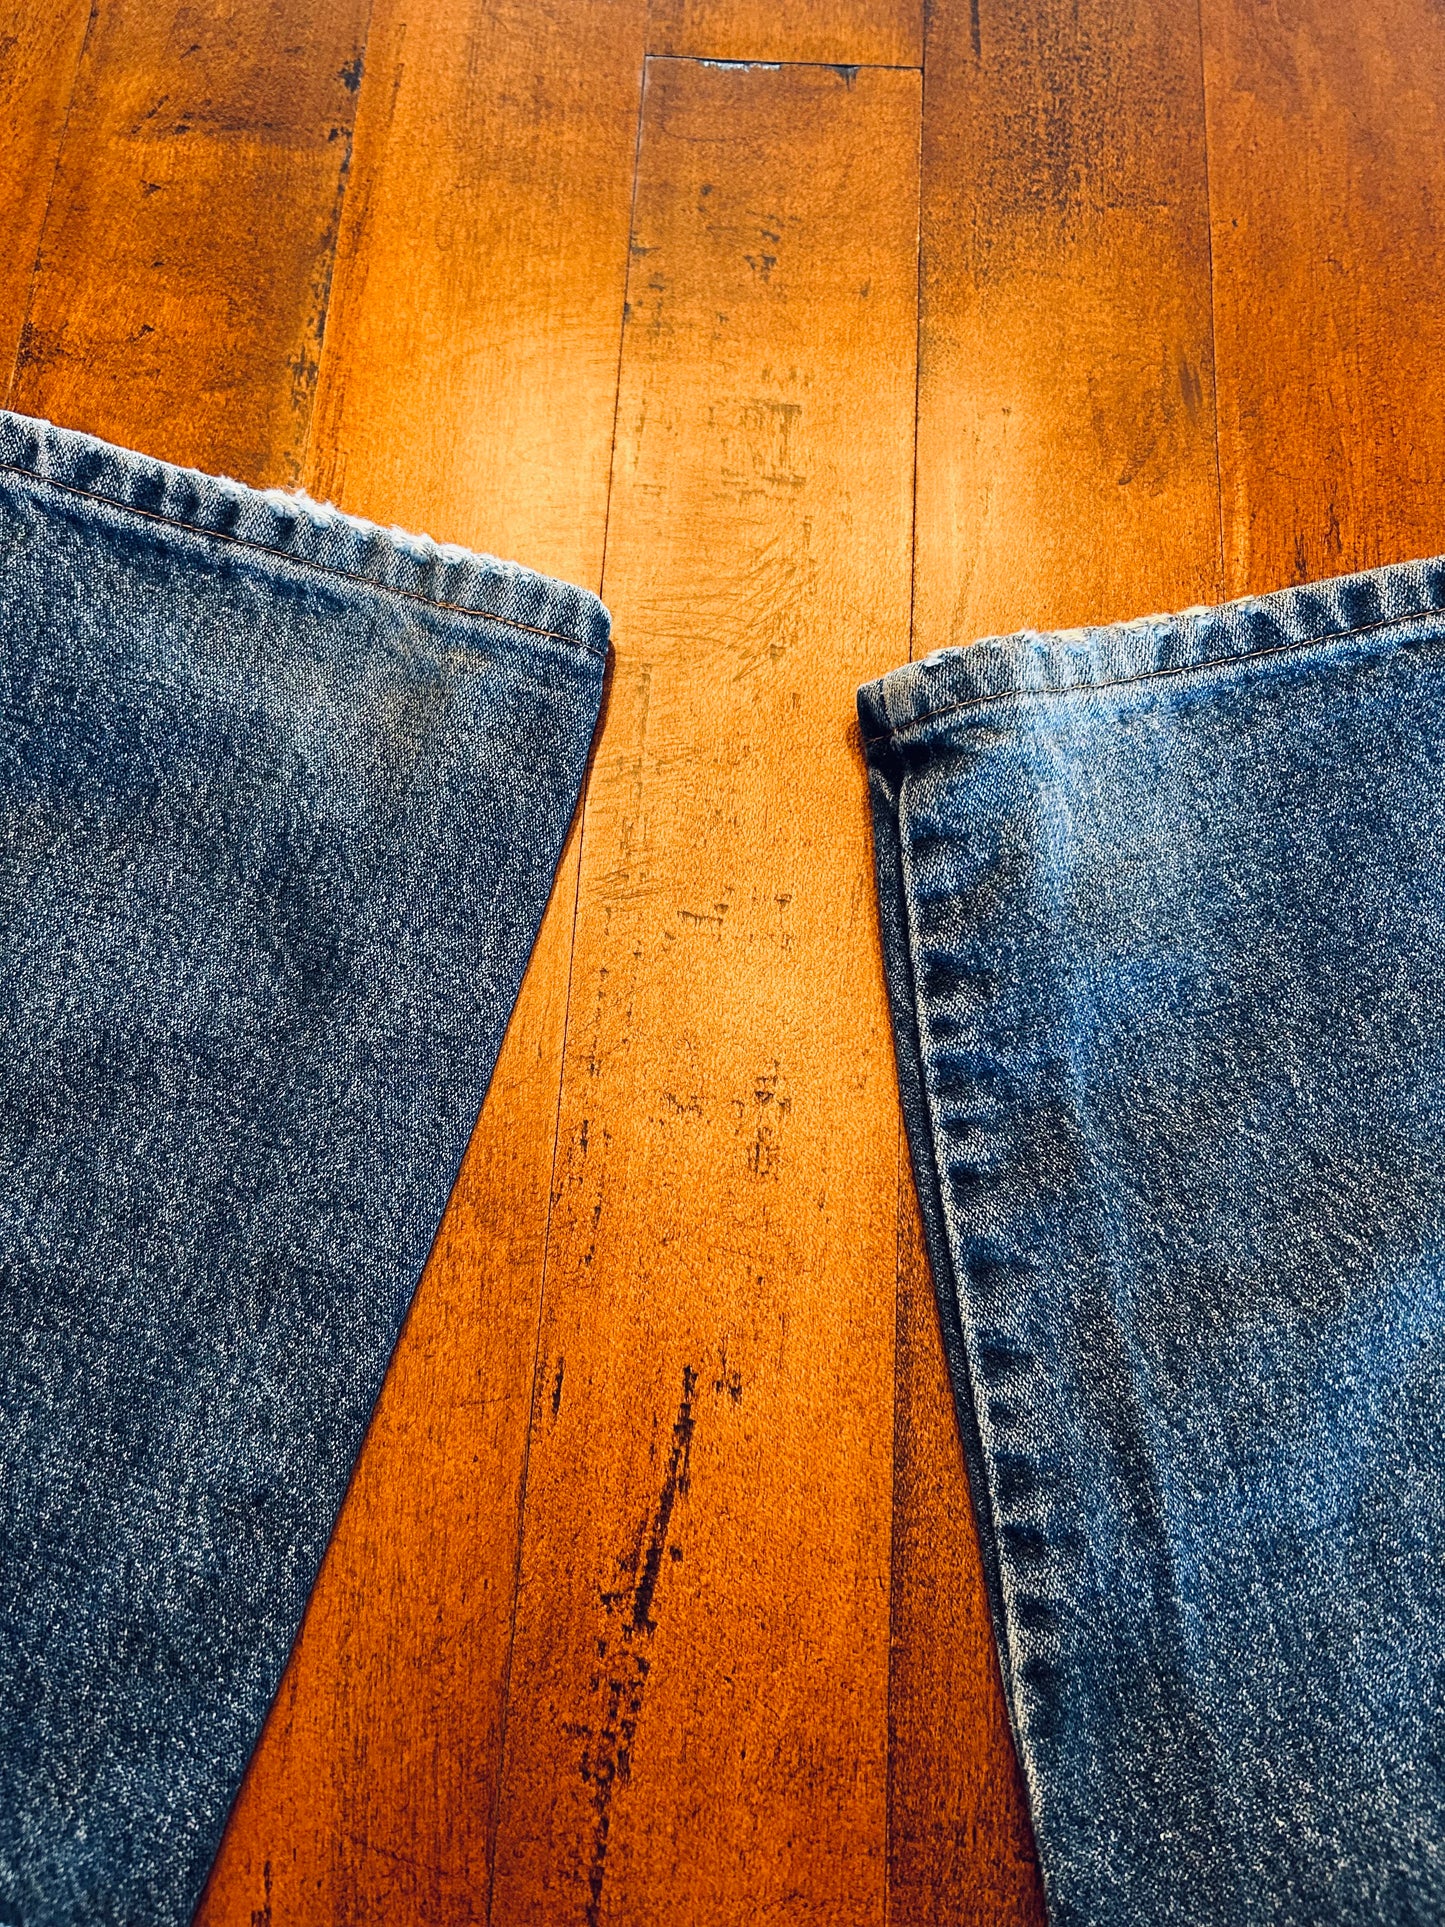 Wrangler Bareback Jeans Size 29x33